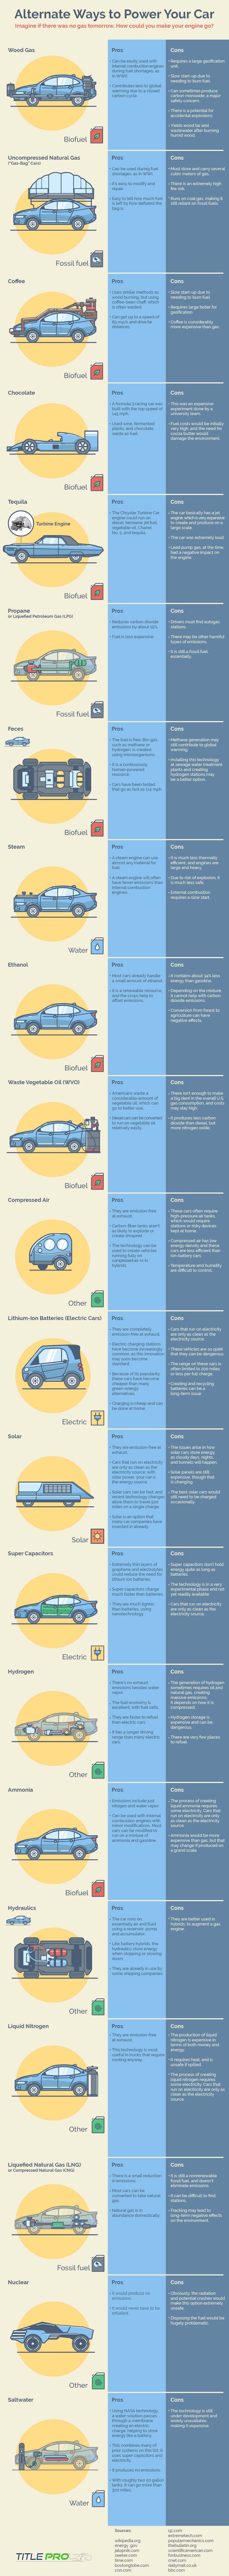 为您的汽车提供动力的替代方法信息图